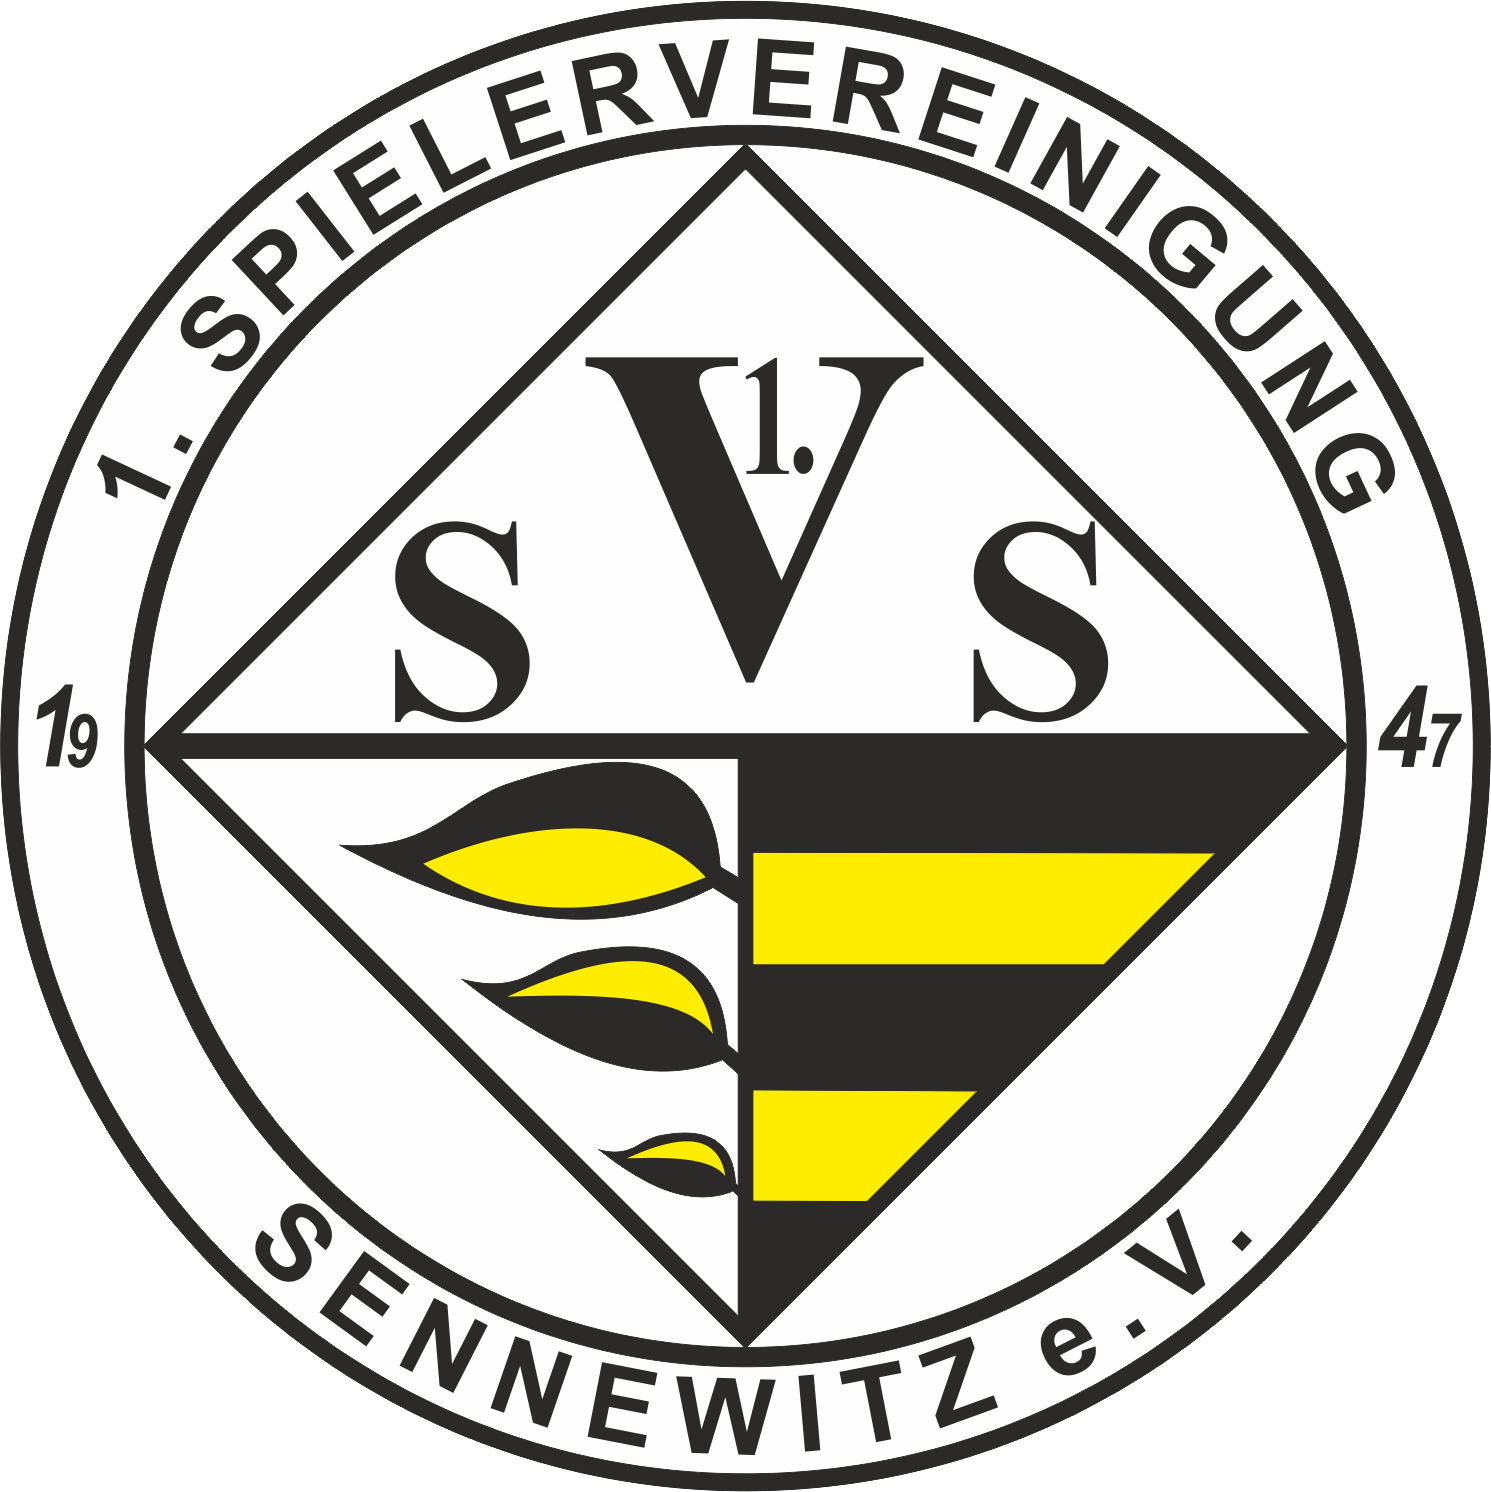 1. SV Sennewitz e.V.